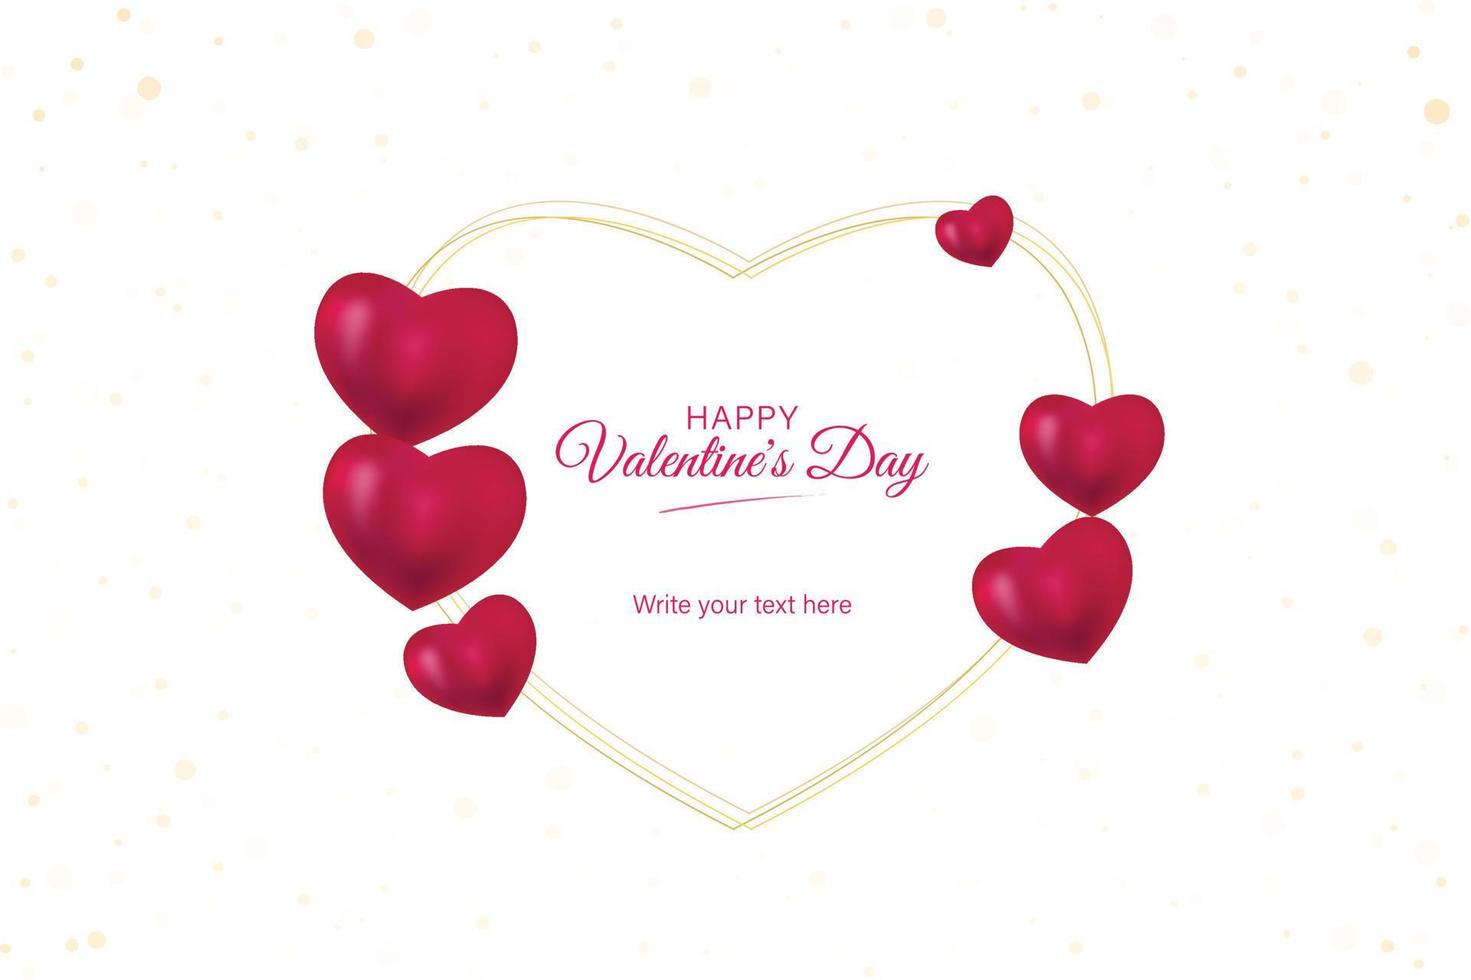 marco de amor con letras de feliz día de san valentín con corazones 3d sobre fondo blanco, diseño de ilustración vectorial vector